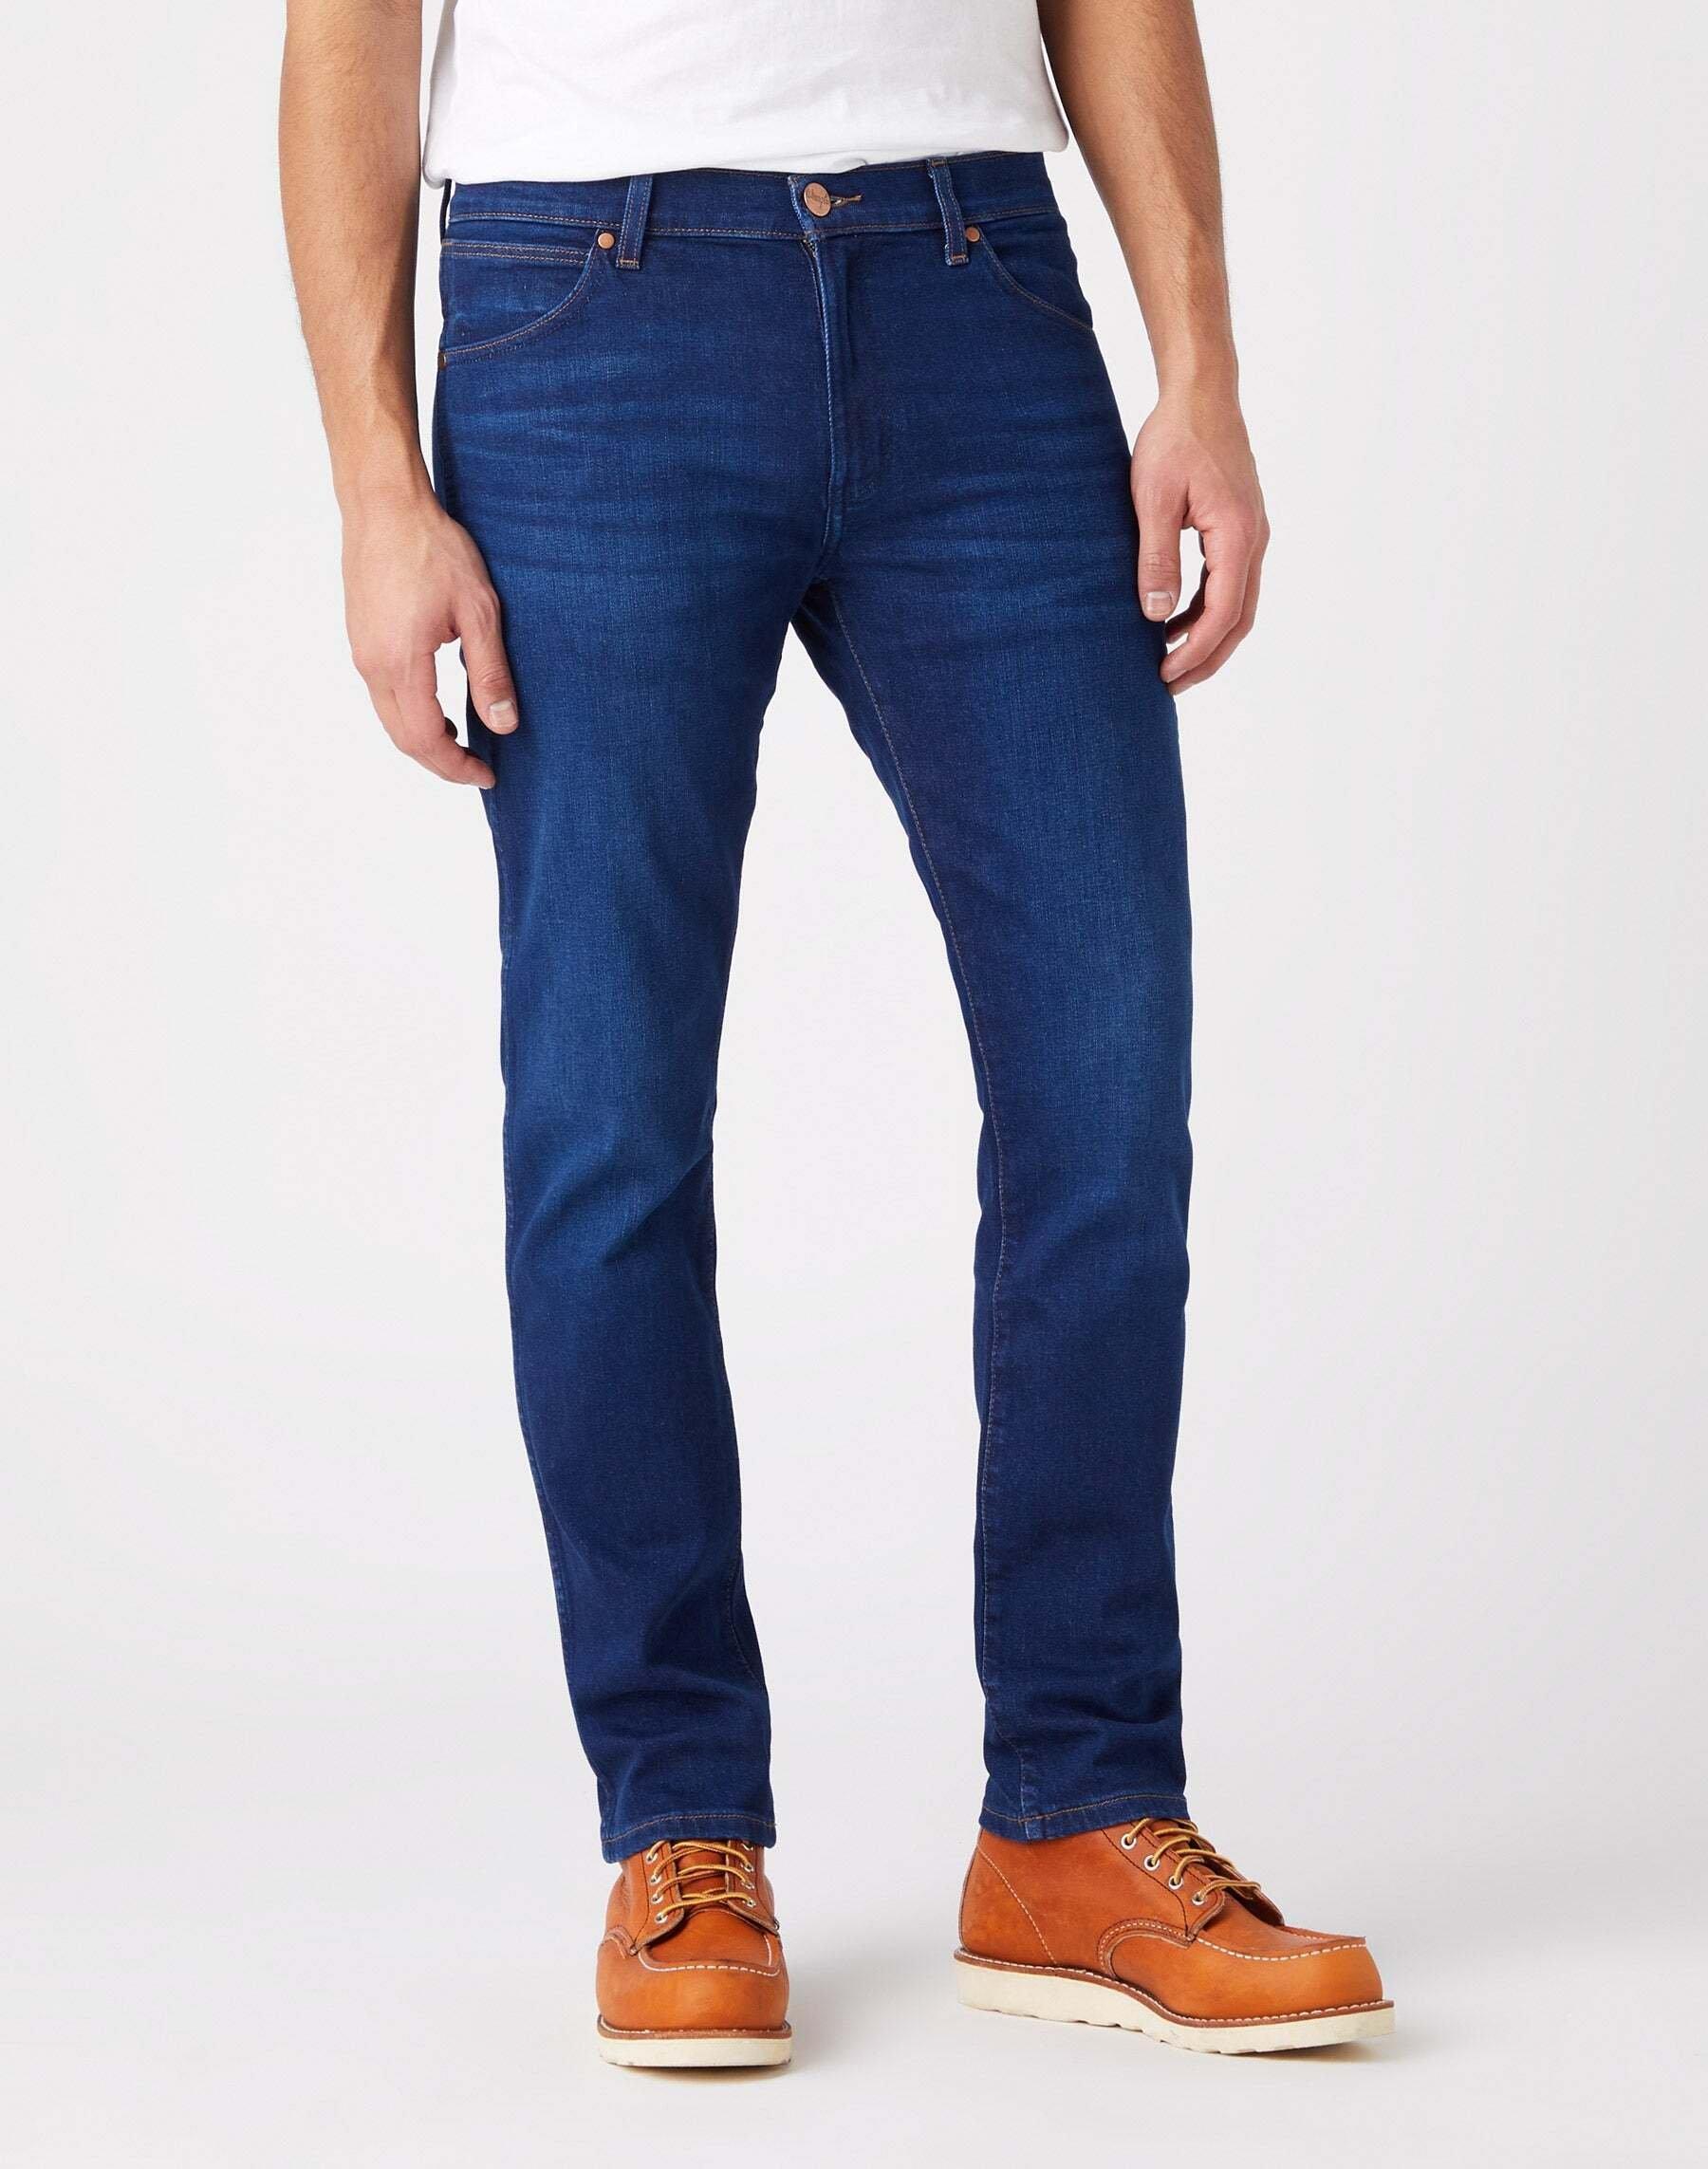 Jeans Slim Fit Larston Herren Blau Denim L32/W28 von Wrangler